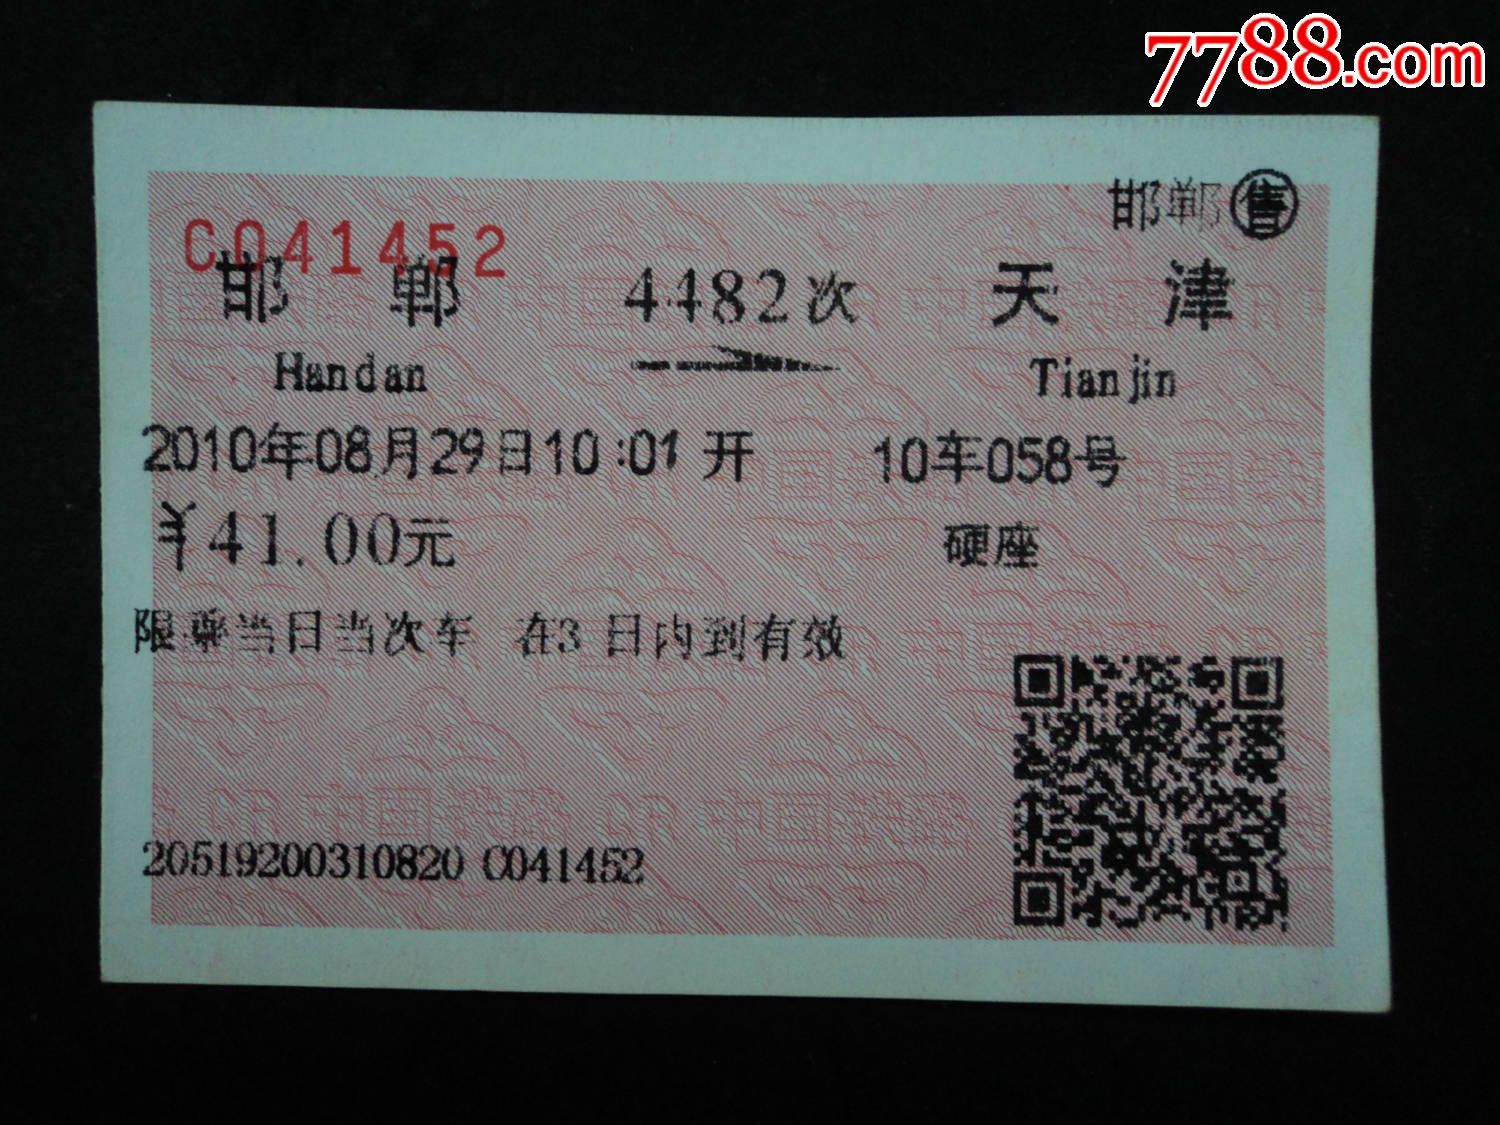 软纸火车票--宝坻到天津6415次